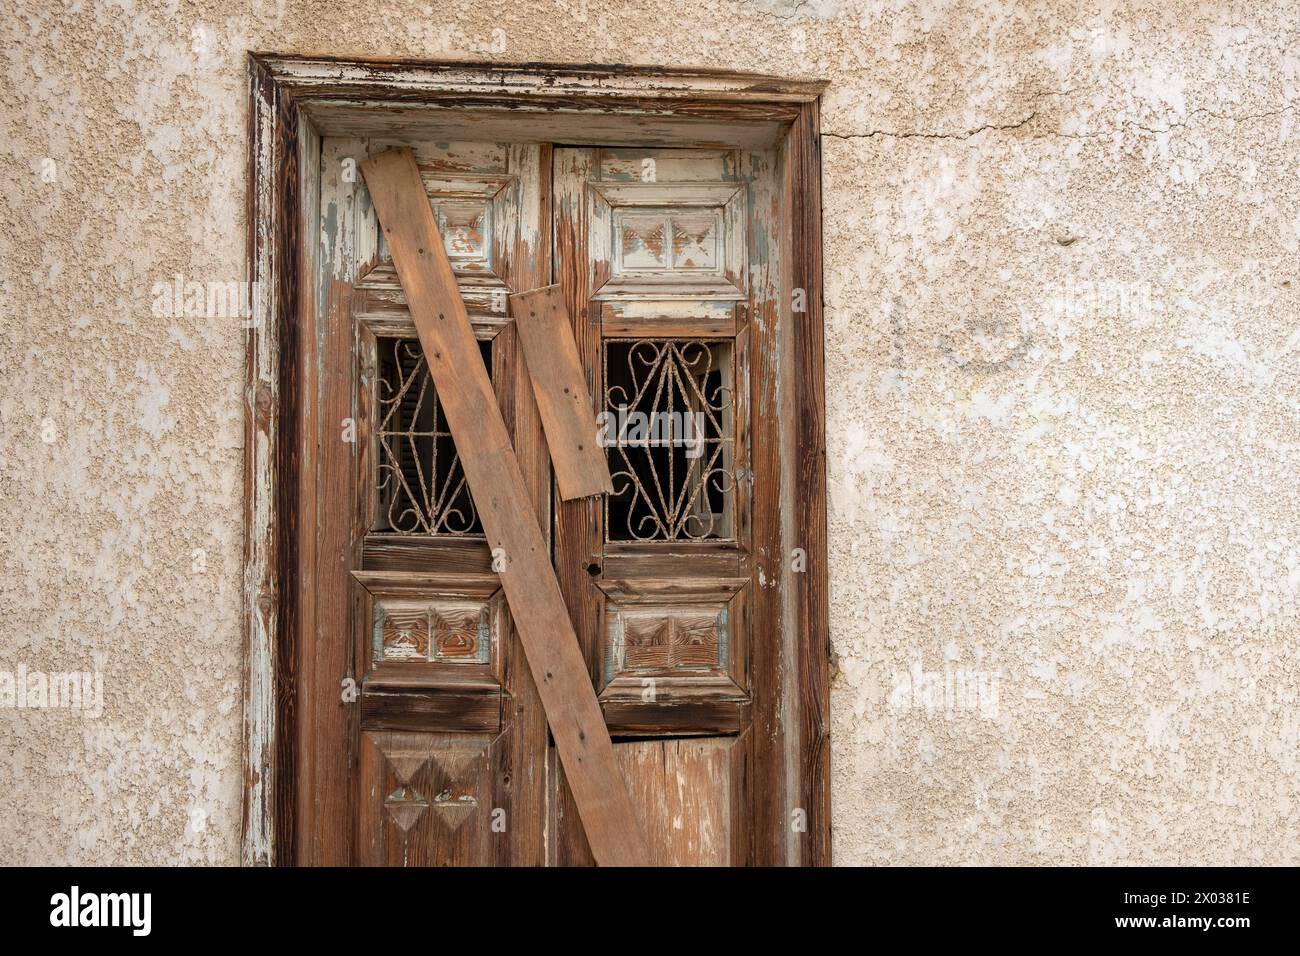 Des planches couvrent une porte arborée sur une maison arabe abandonnée au moyen-Orient. Banque D'Images